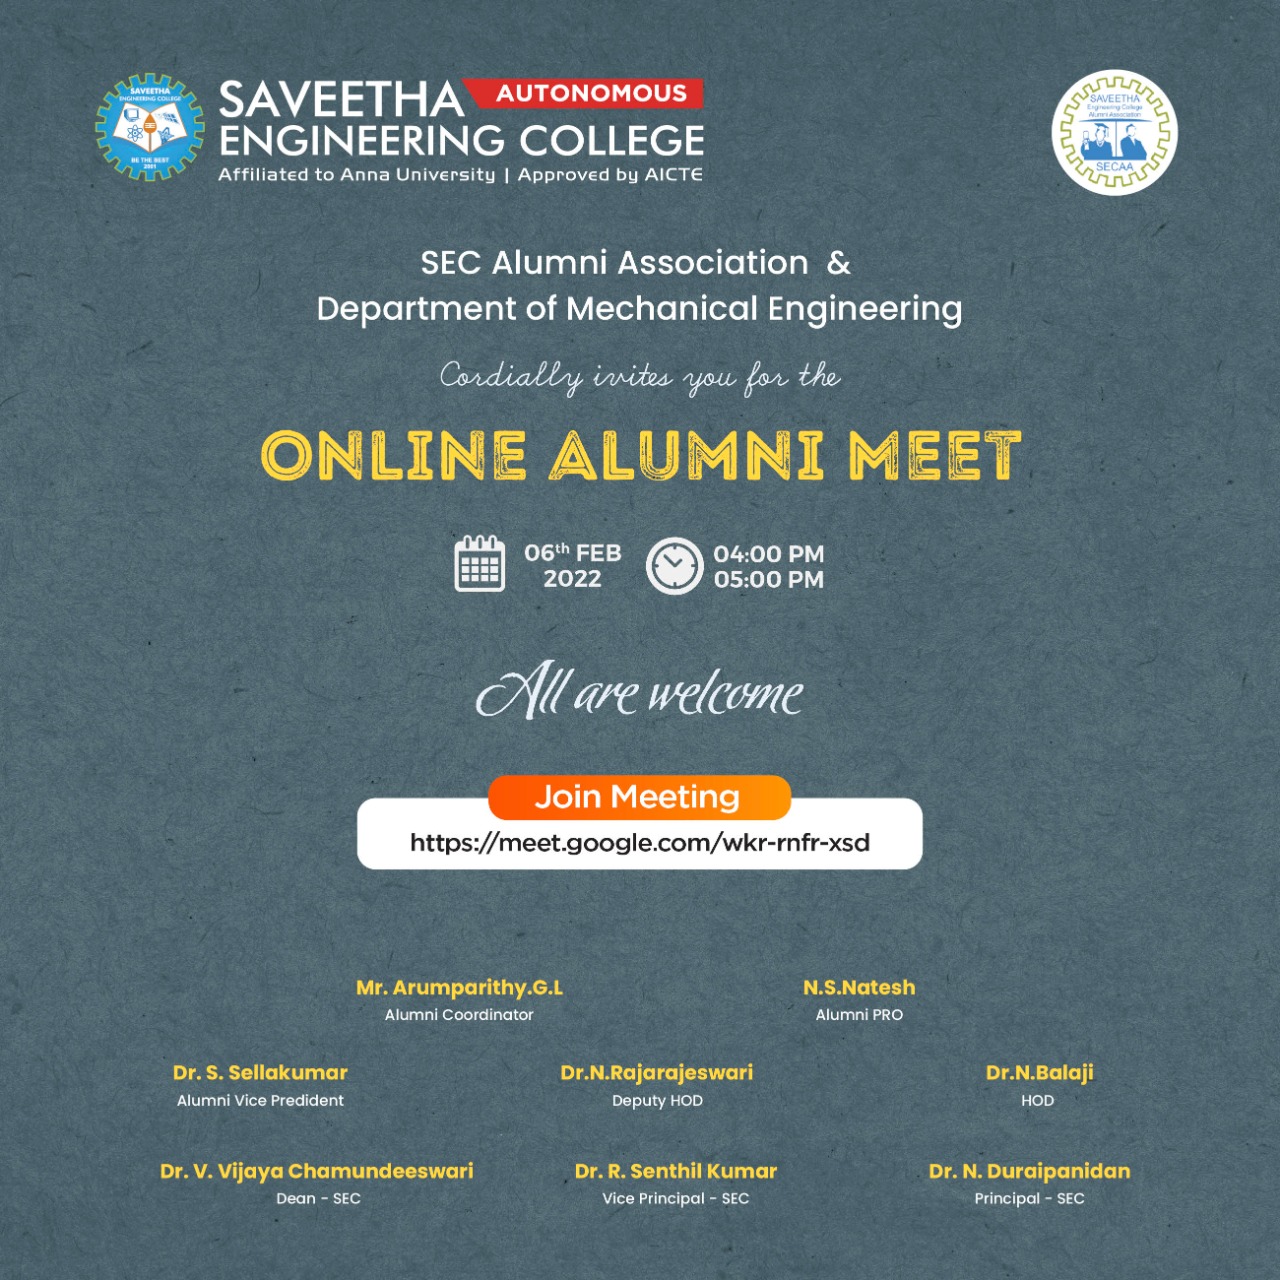 Saveetha Engineering College organizes Online Alumni Meet by Department of Mechanical Engineering